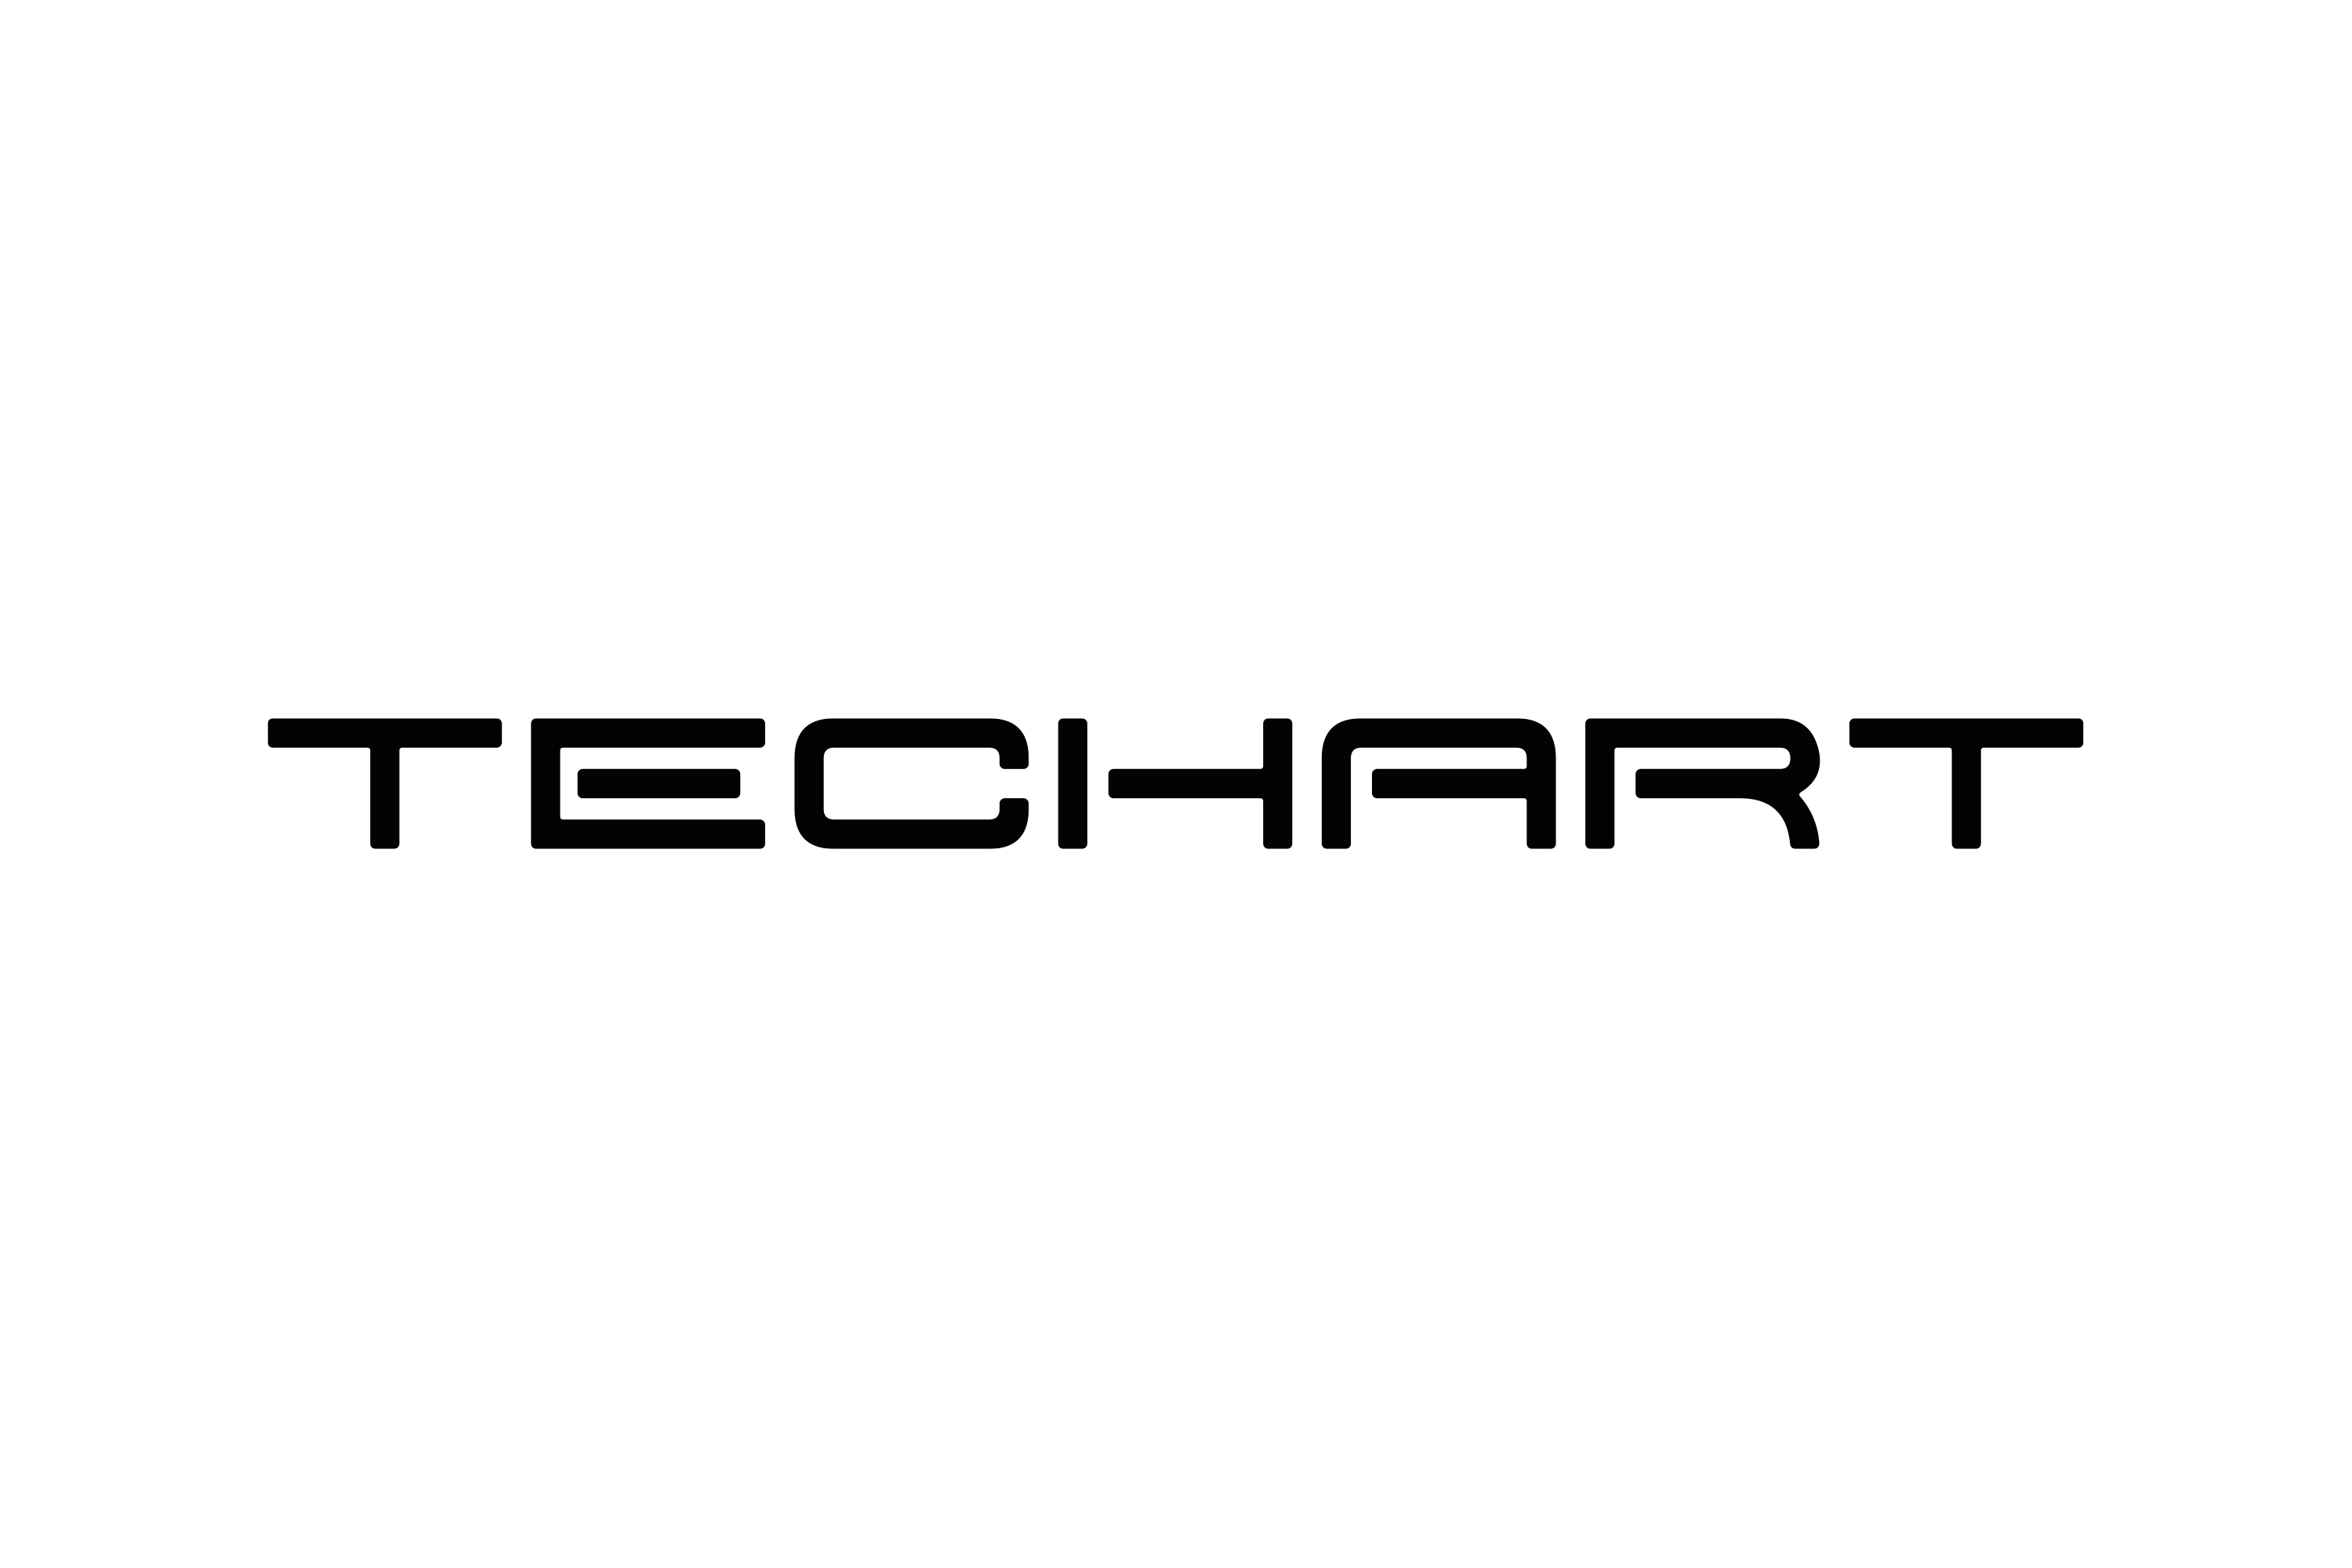 Techart